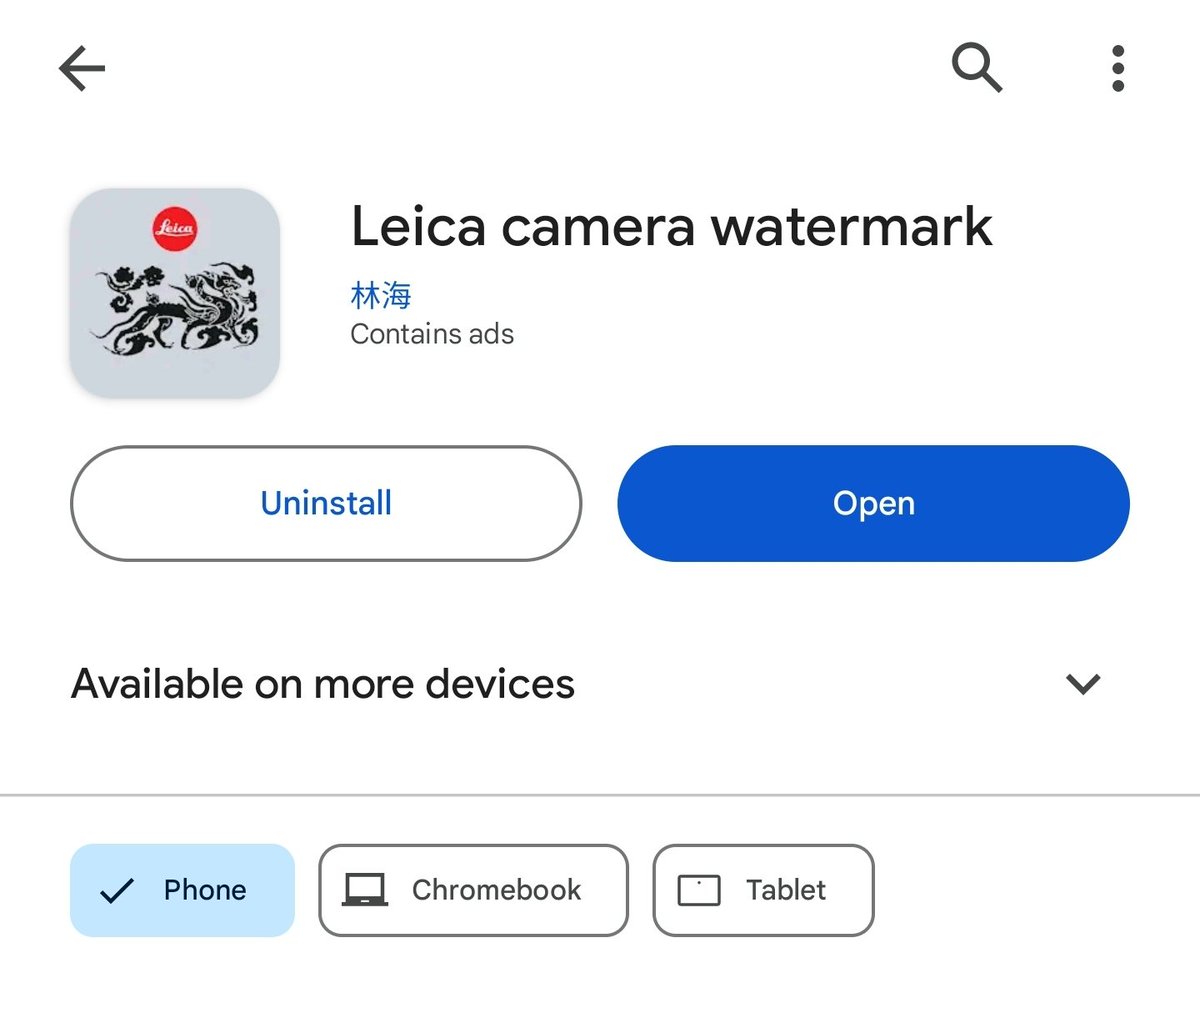 Android juga ngga mau kalah dong. Bagi pengguna Android, untuk foto-fotonya biar ada meta datanya bisa langsung download LEICA CAMERA WATERMARK di Play Store.